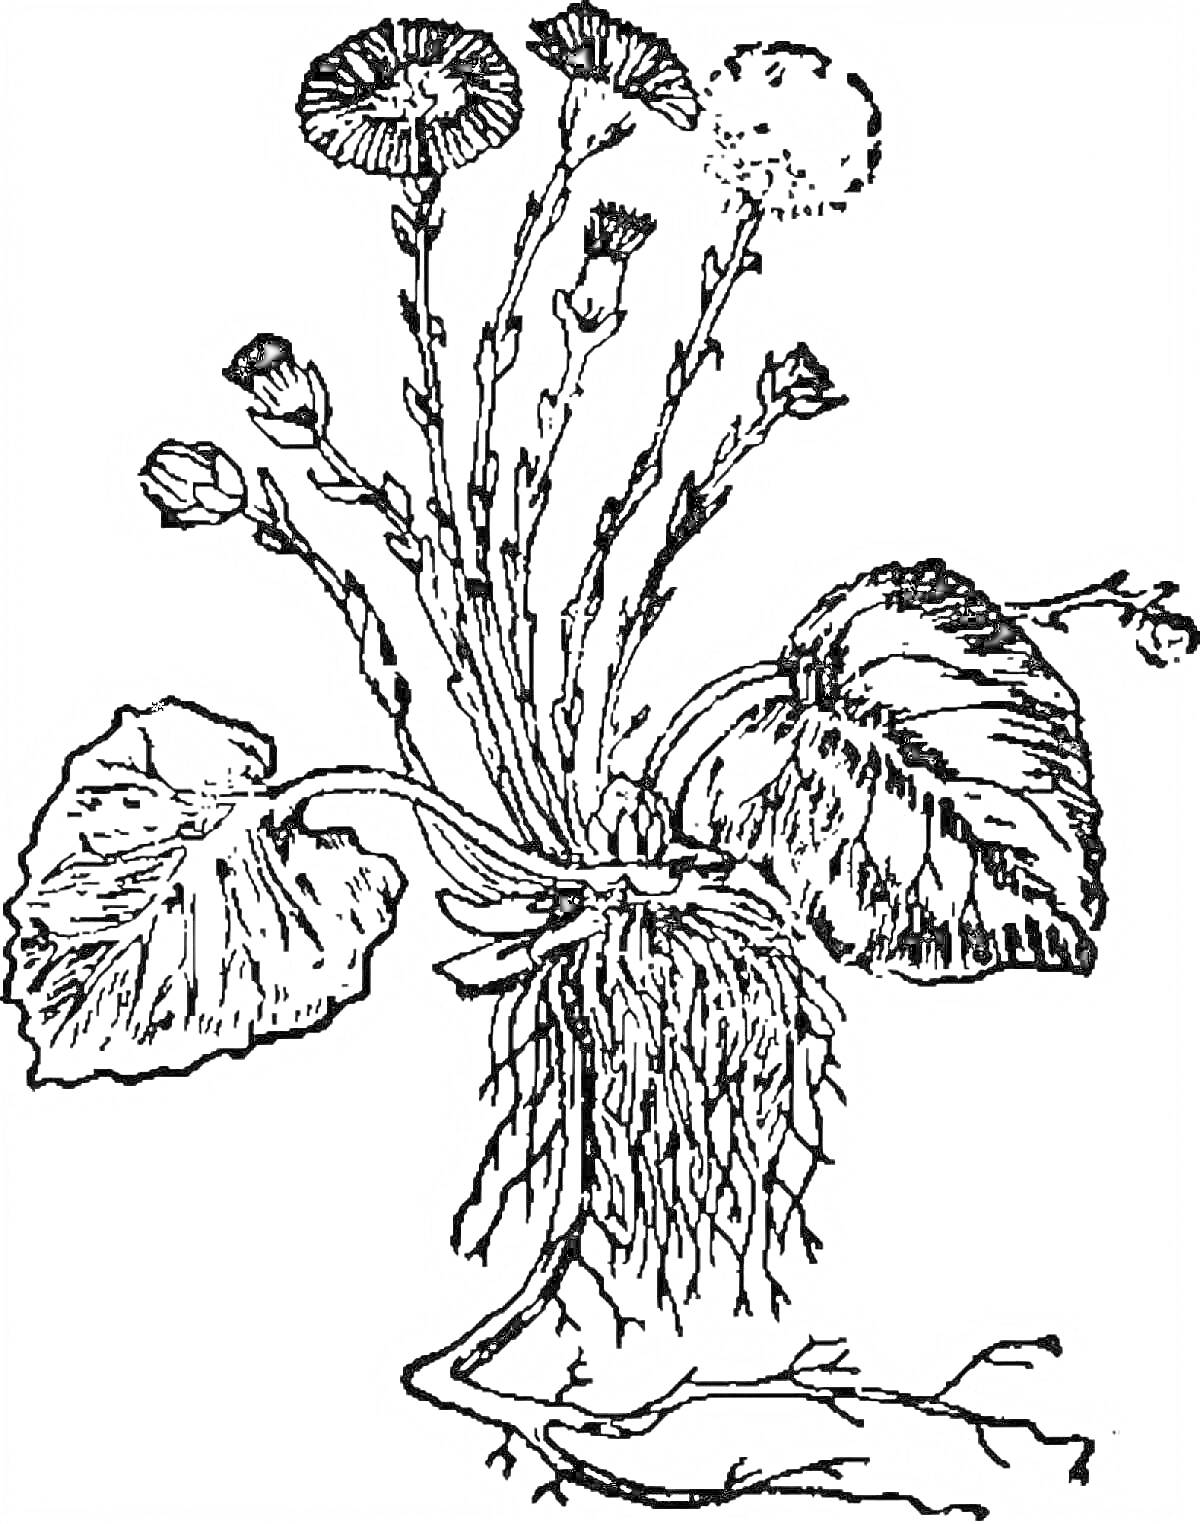 Рисунок мать-и-мачехи с цветами, листьями и корнями.